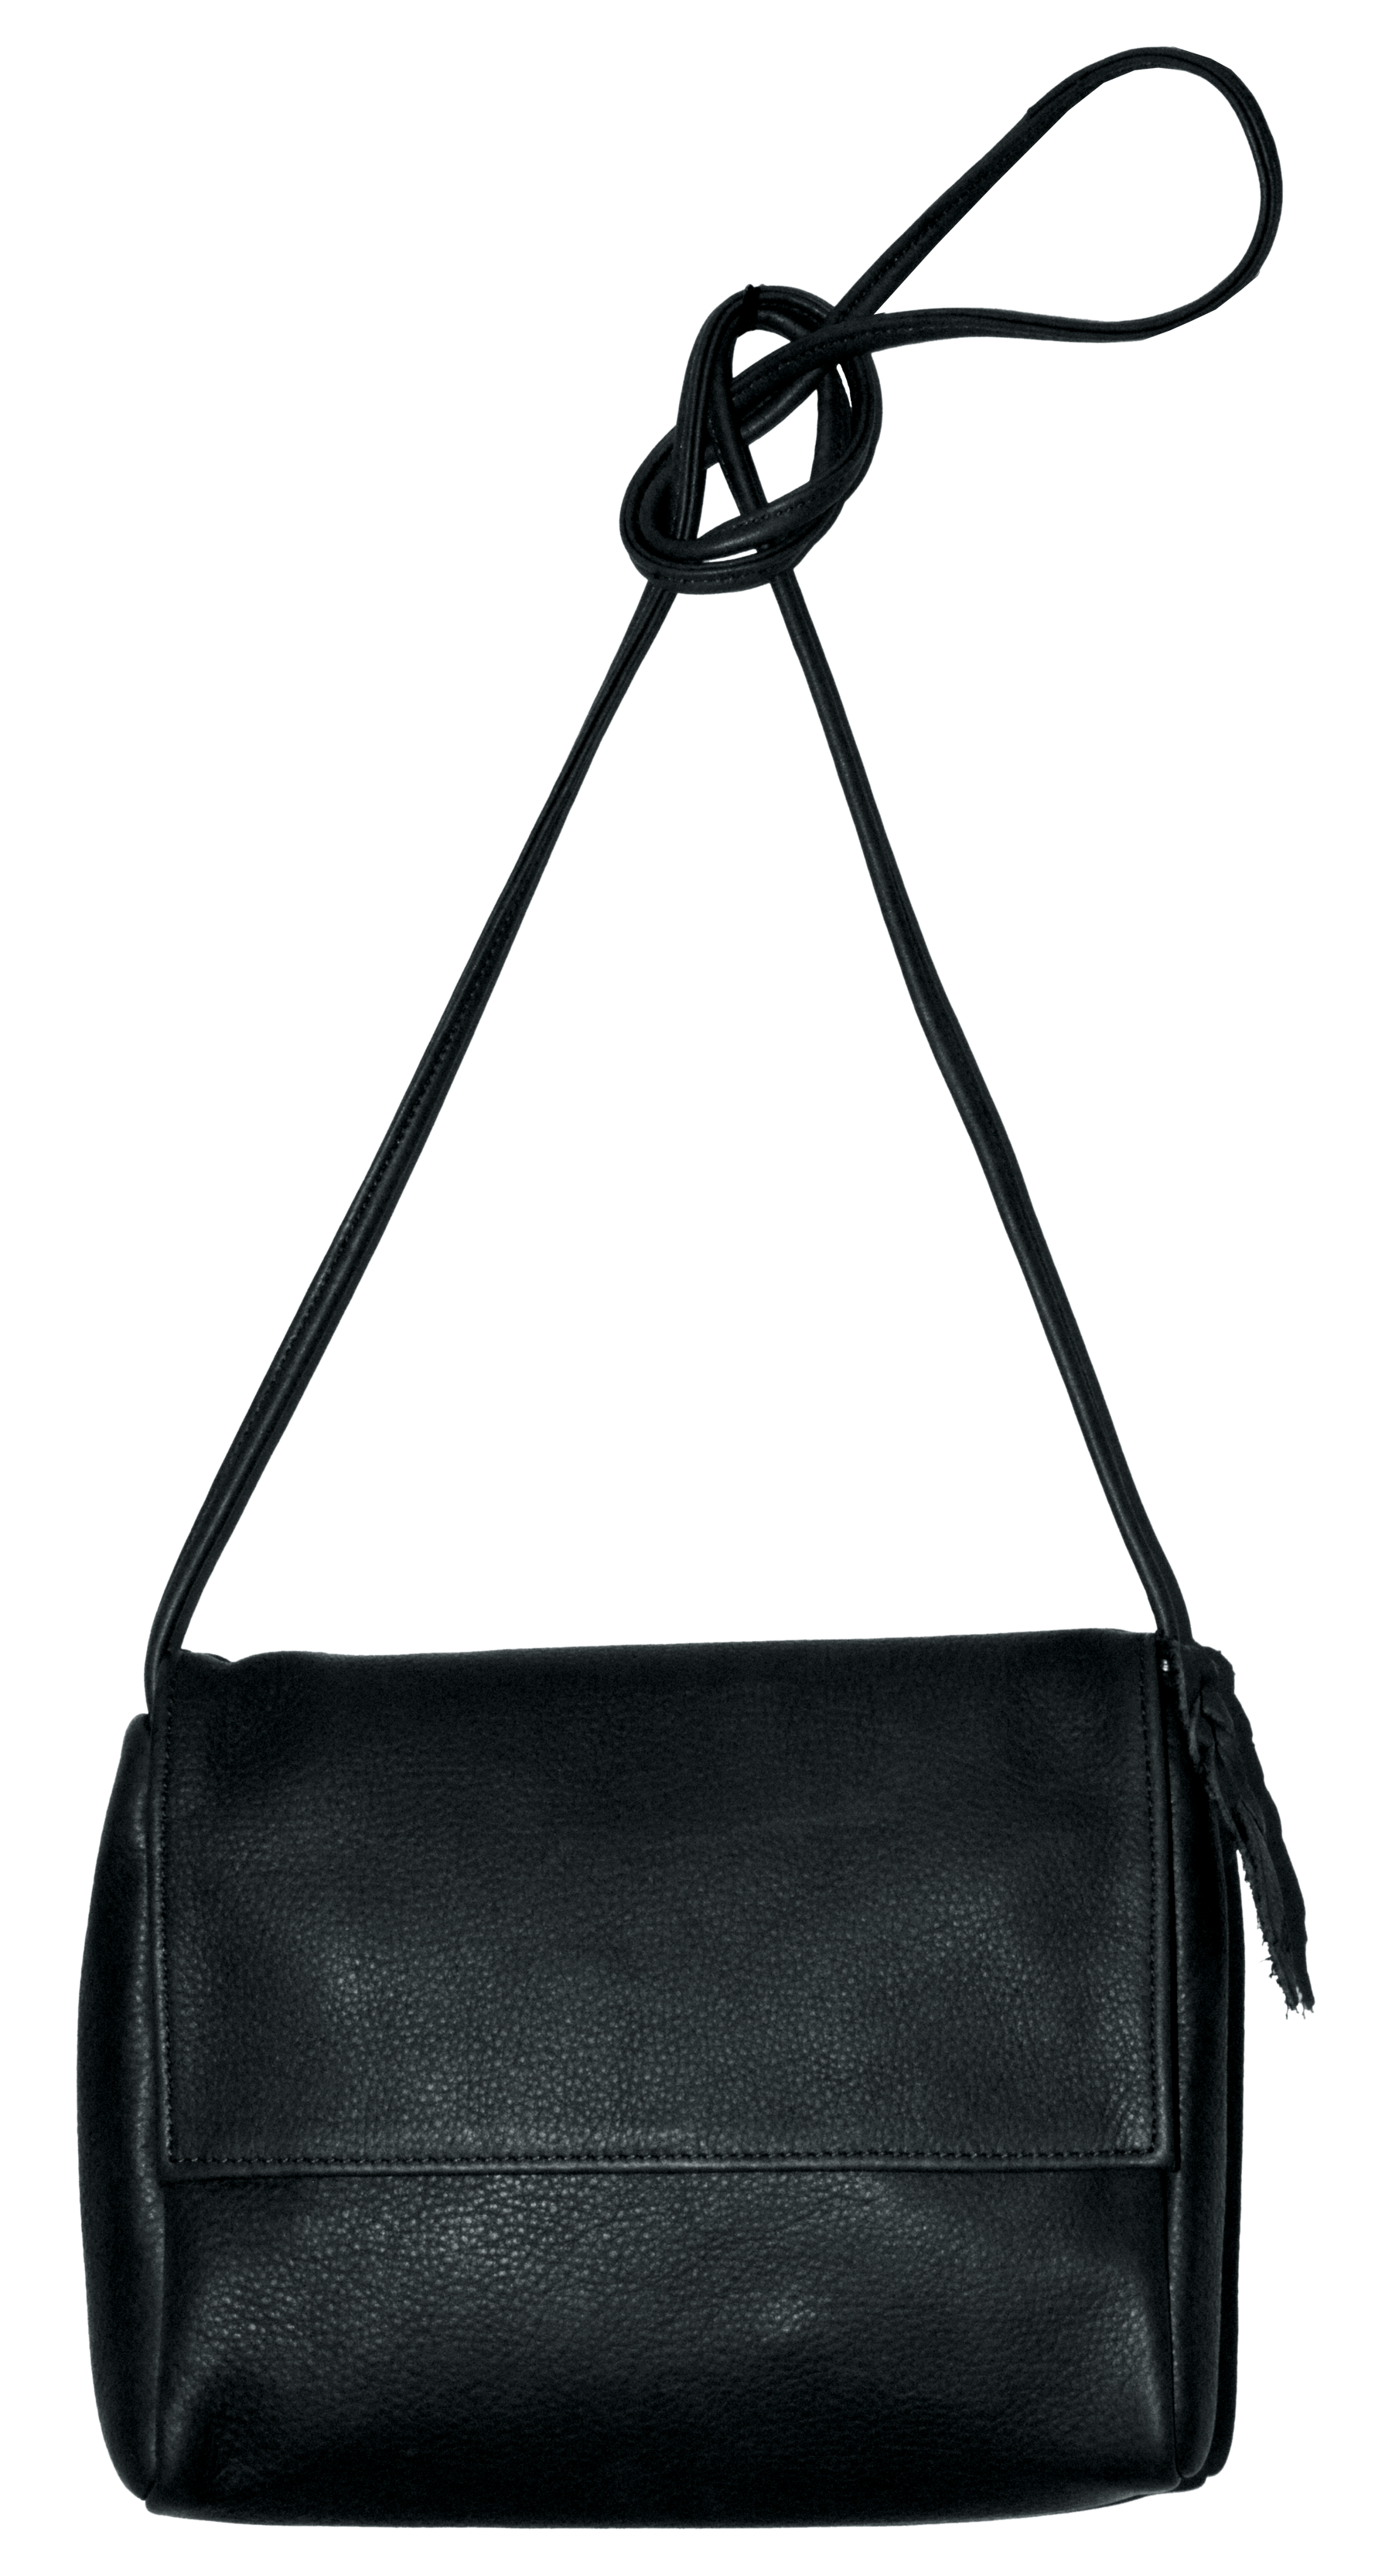 SVEN Style No. 115 Crossbody/Shoulder Bag black leather